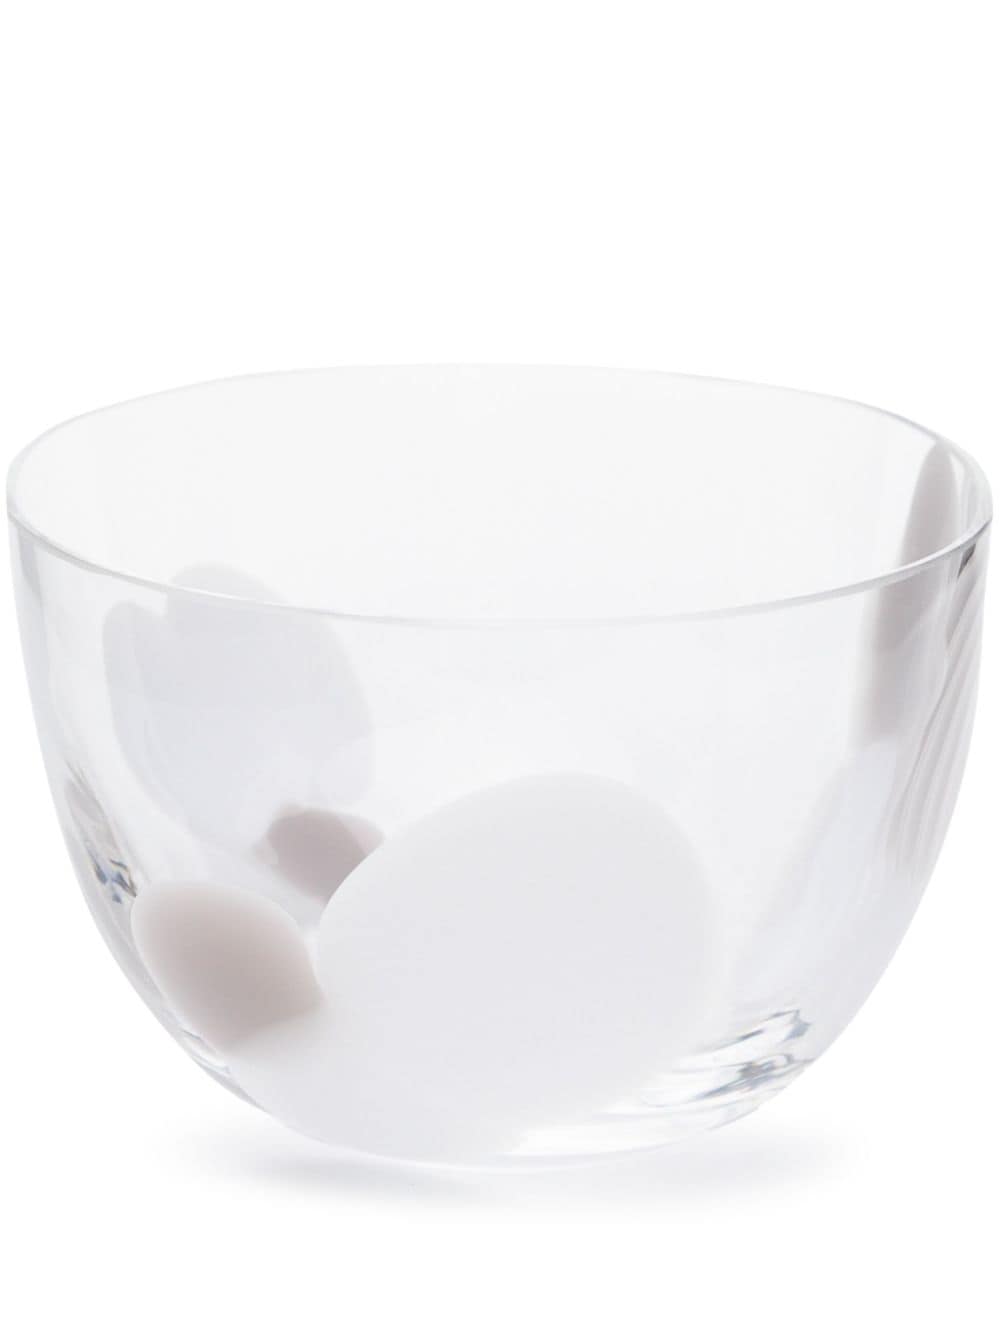 Carlo Moretti Le Diverse Transparent Glass Bowl In White